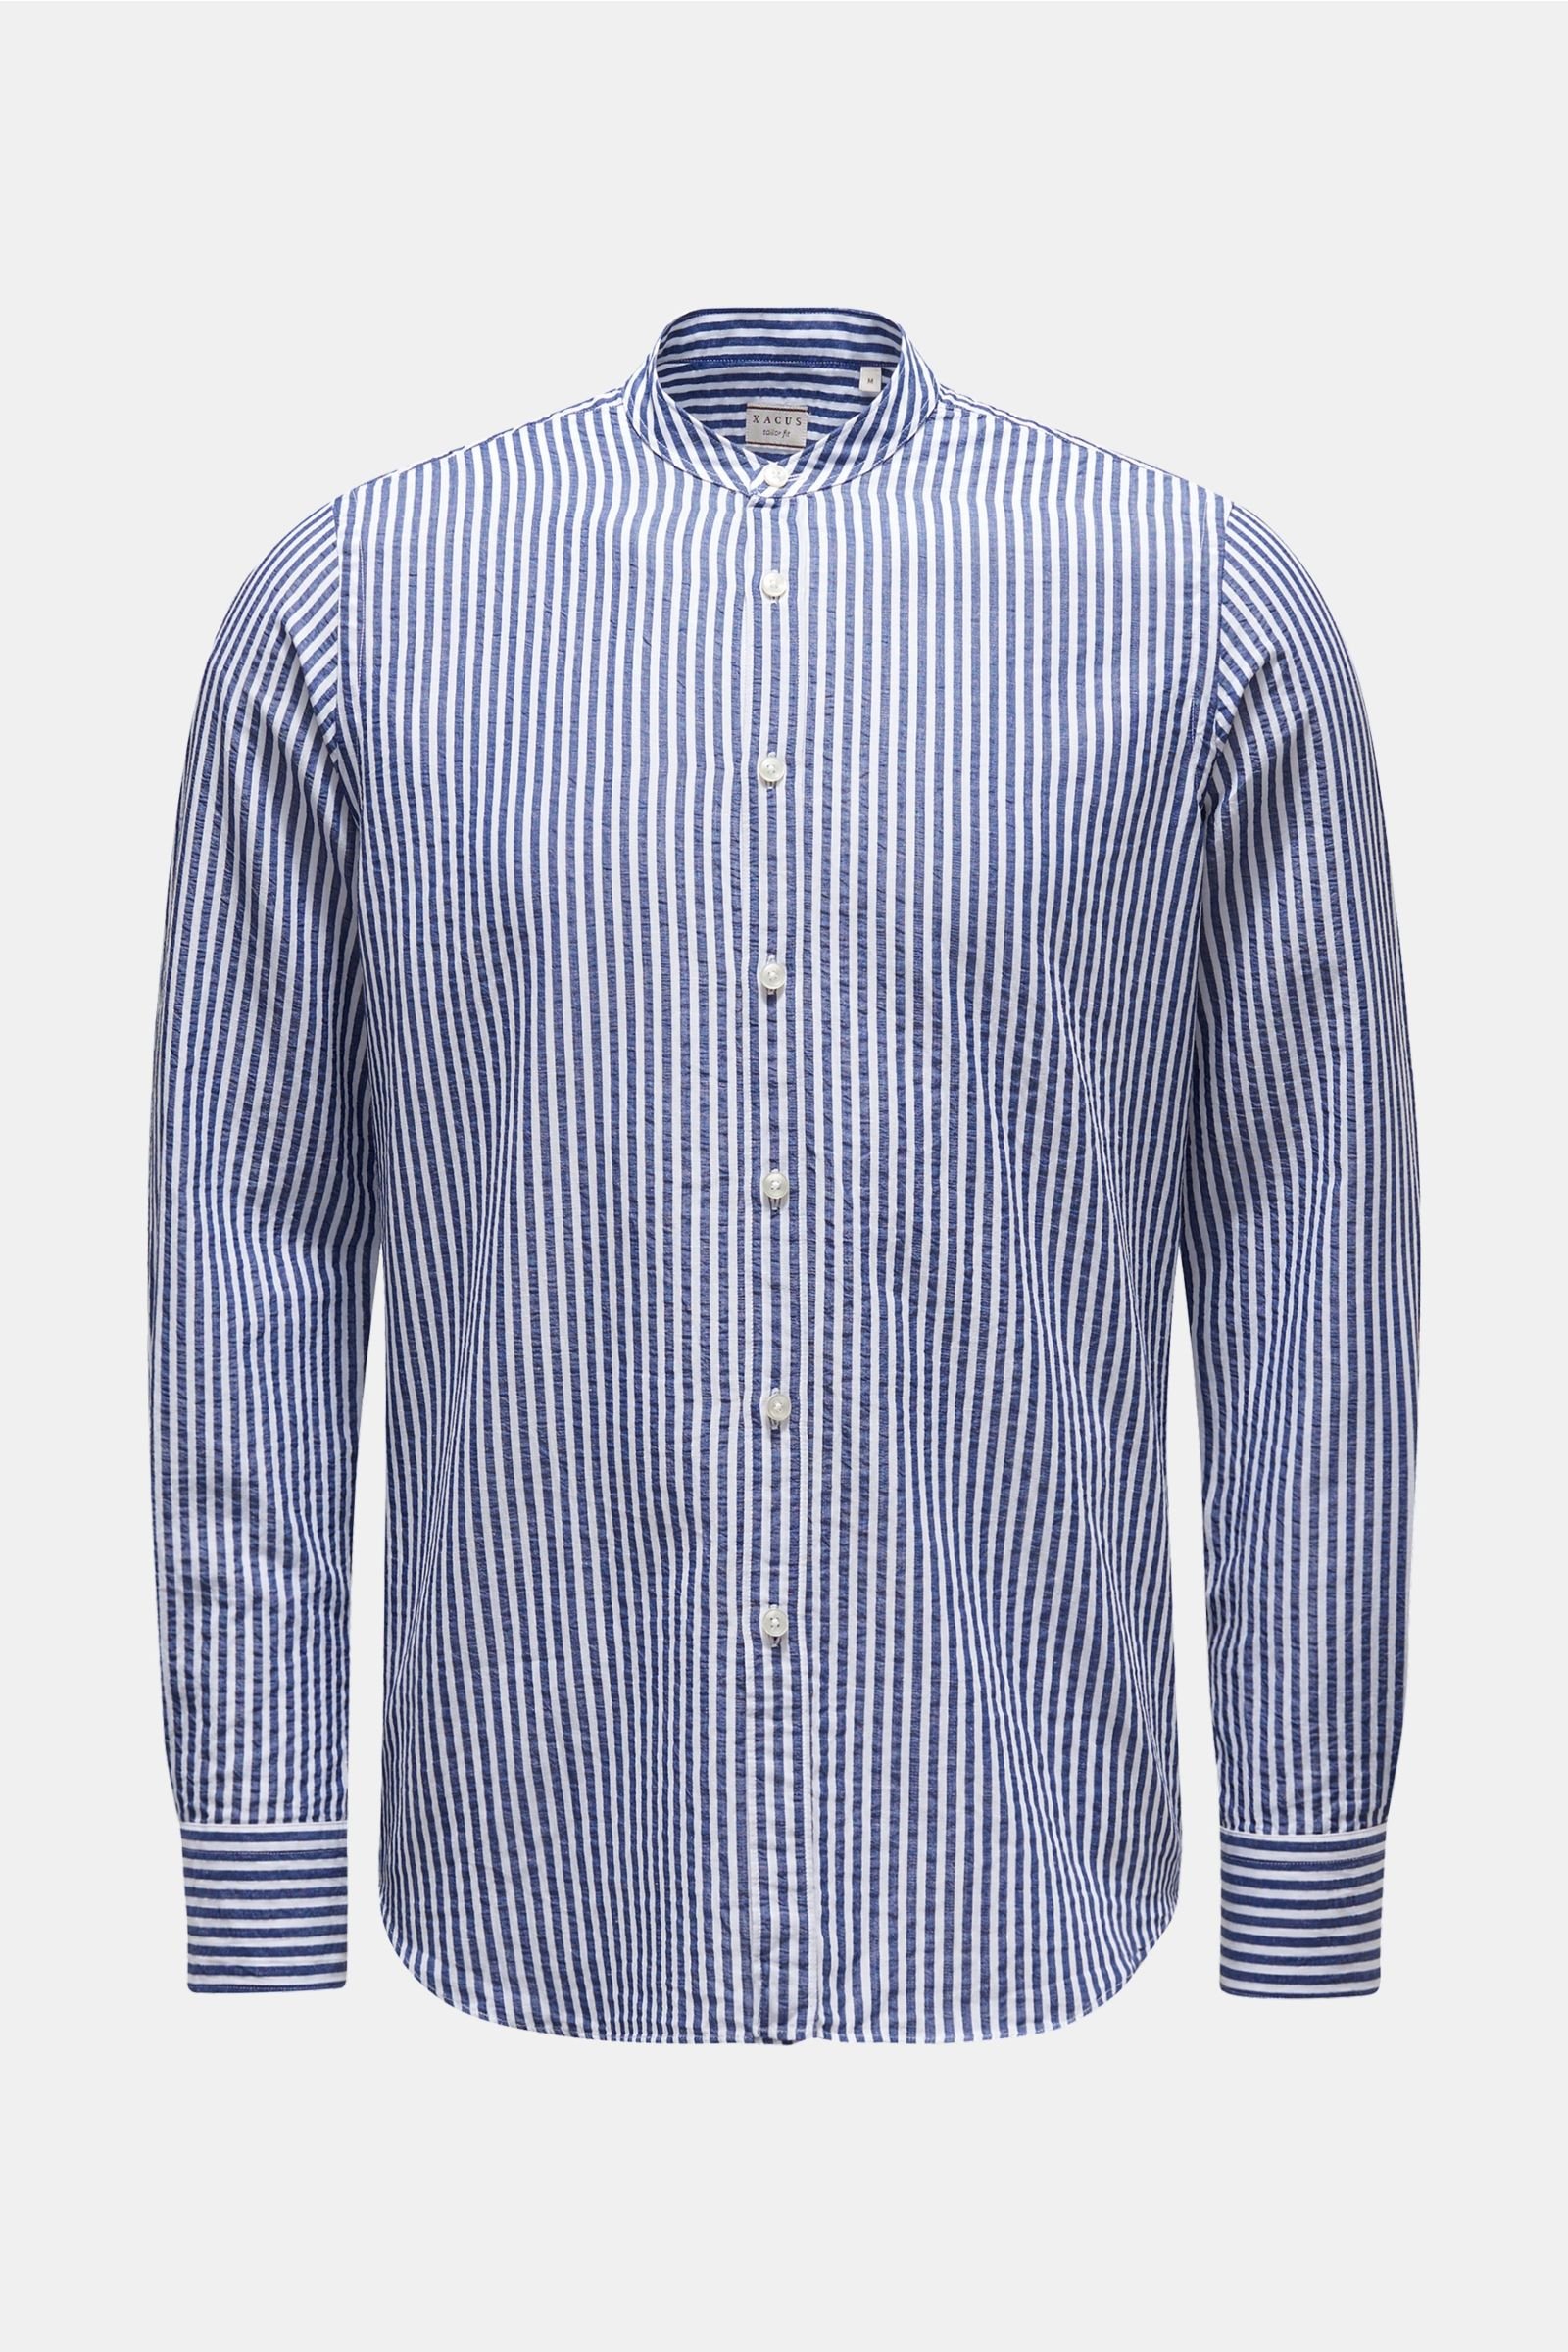 Seersucker shirt 'Tailor Fit' grandad collar navy/white striped